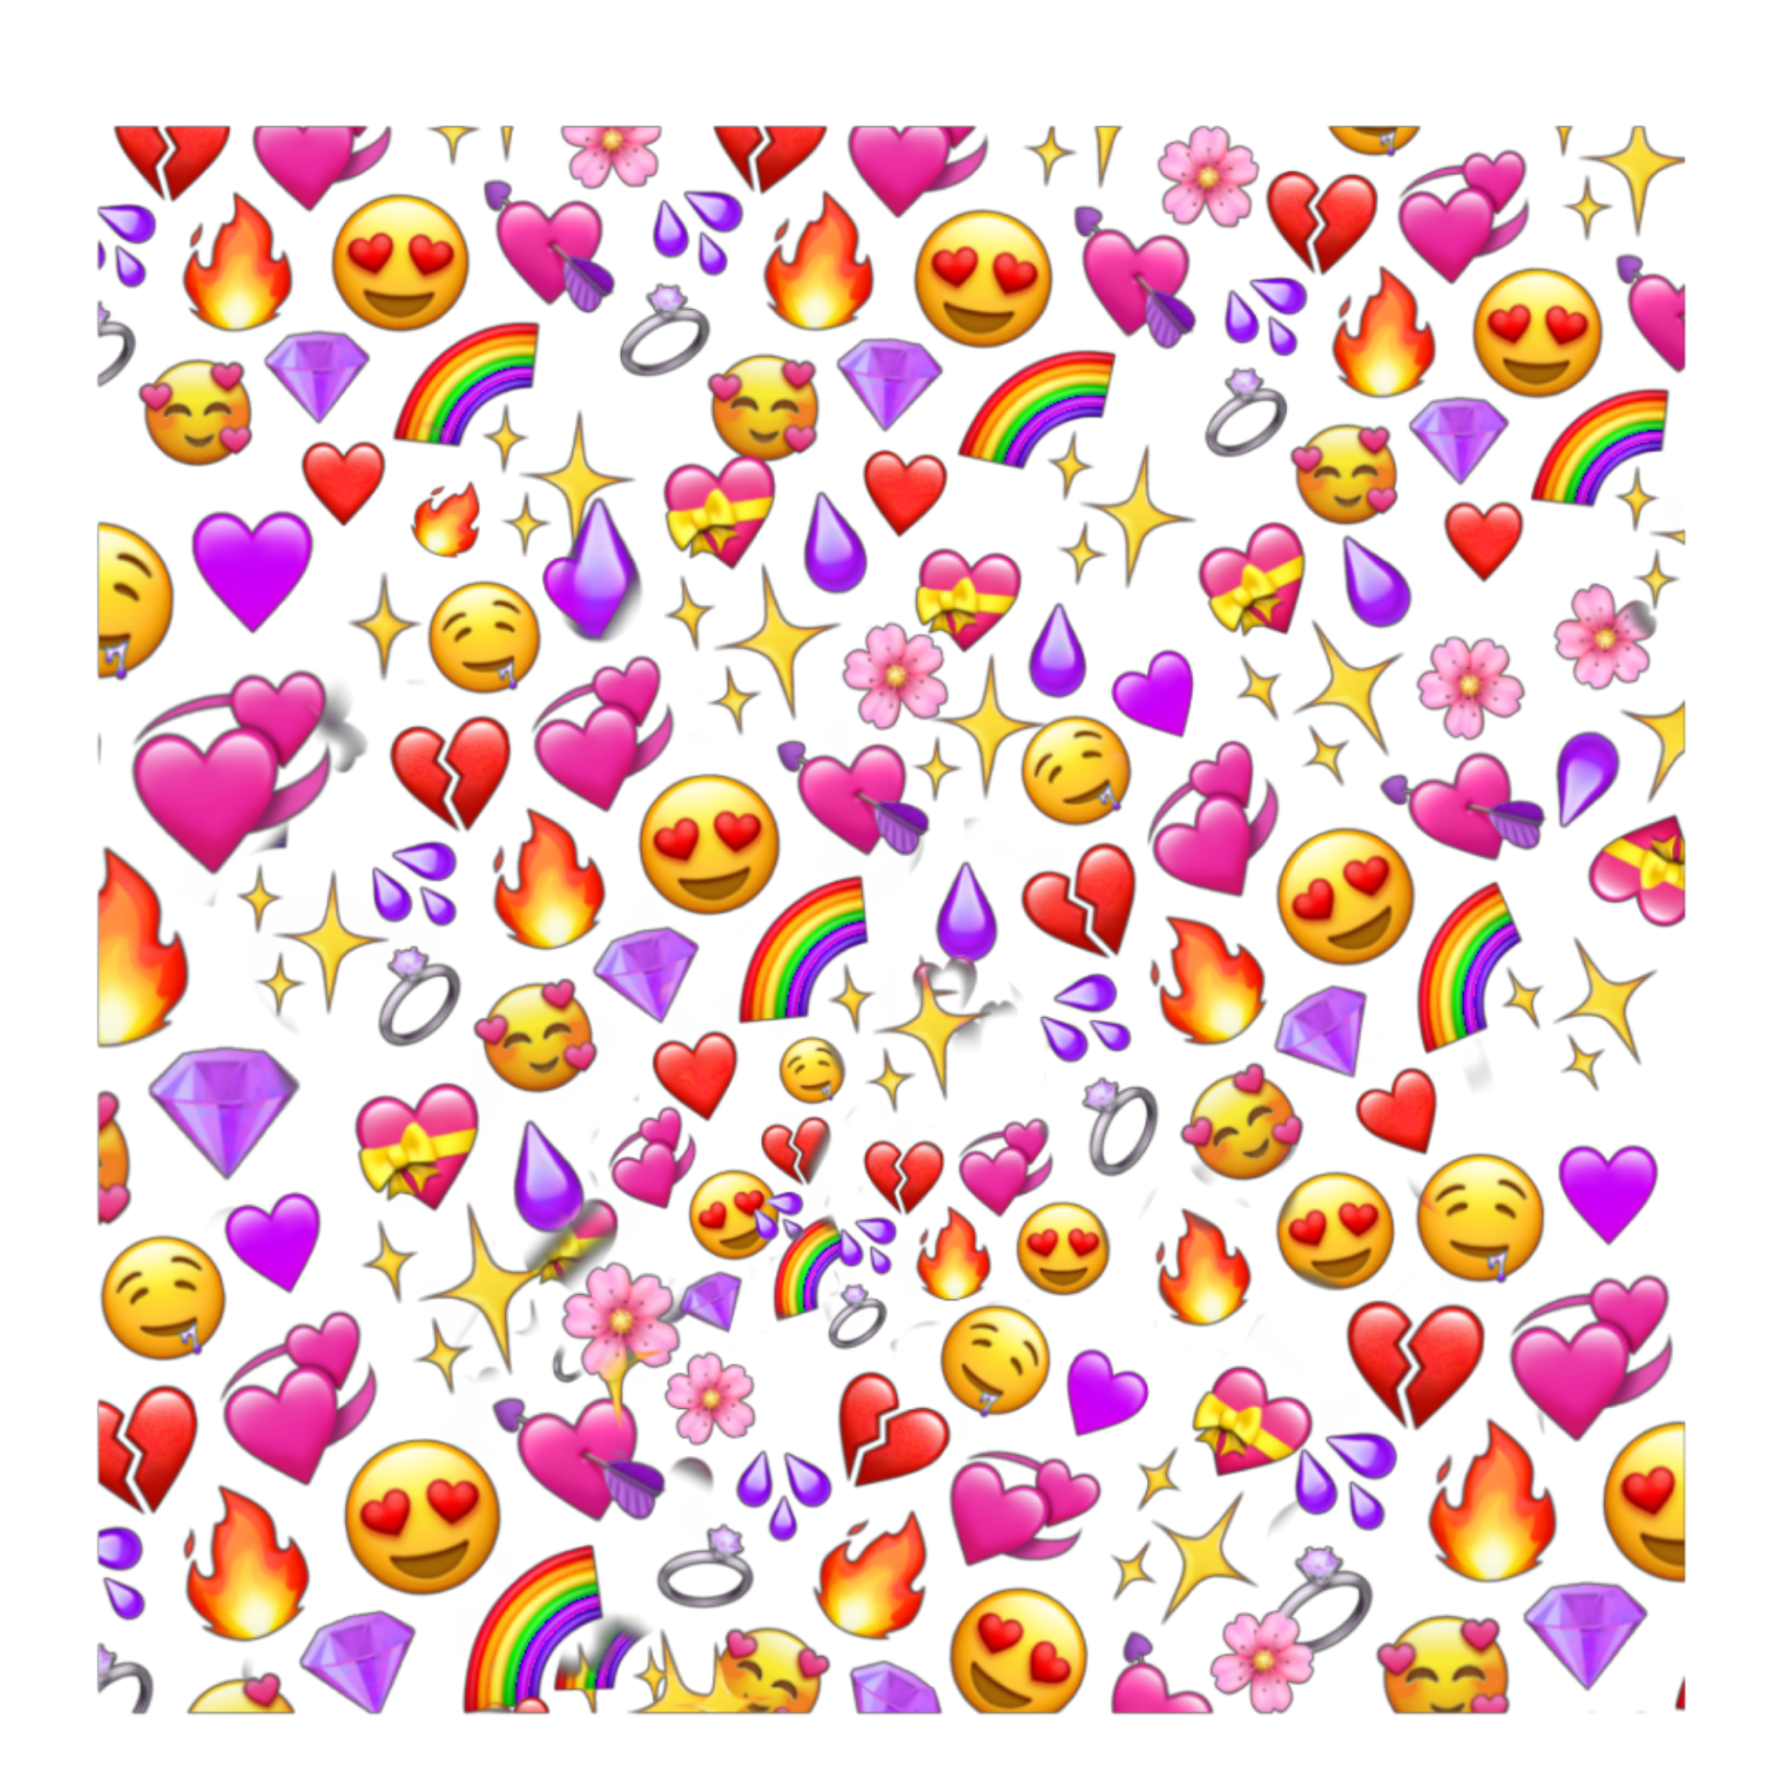 39800 Heart Emoji Stock Photos Pictures  RoyaltyFree Images  iStock   Red heart emoji Love heart emoji Heart emoji vector